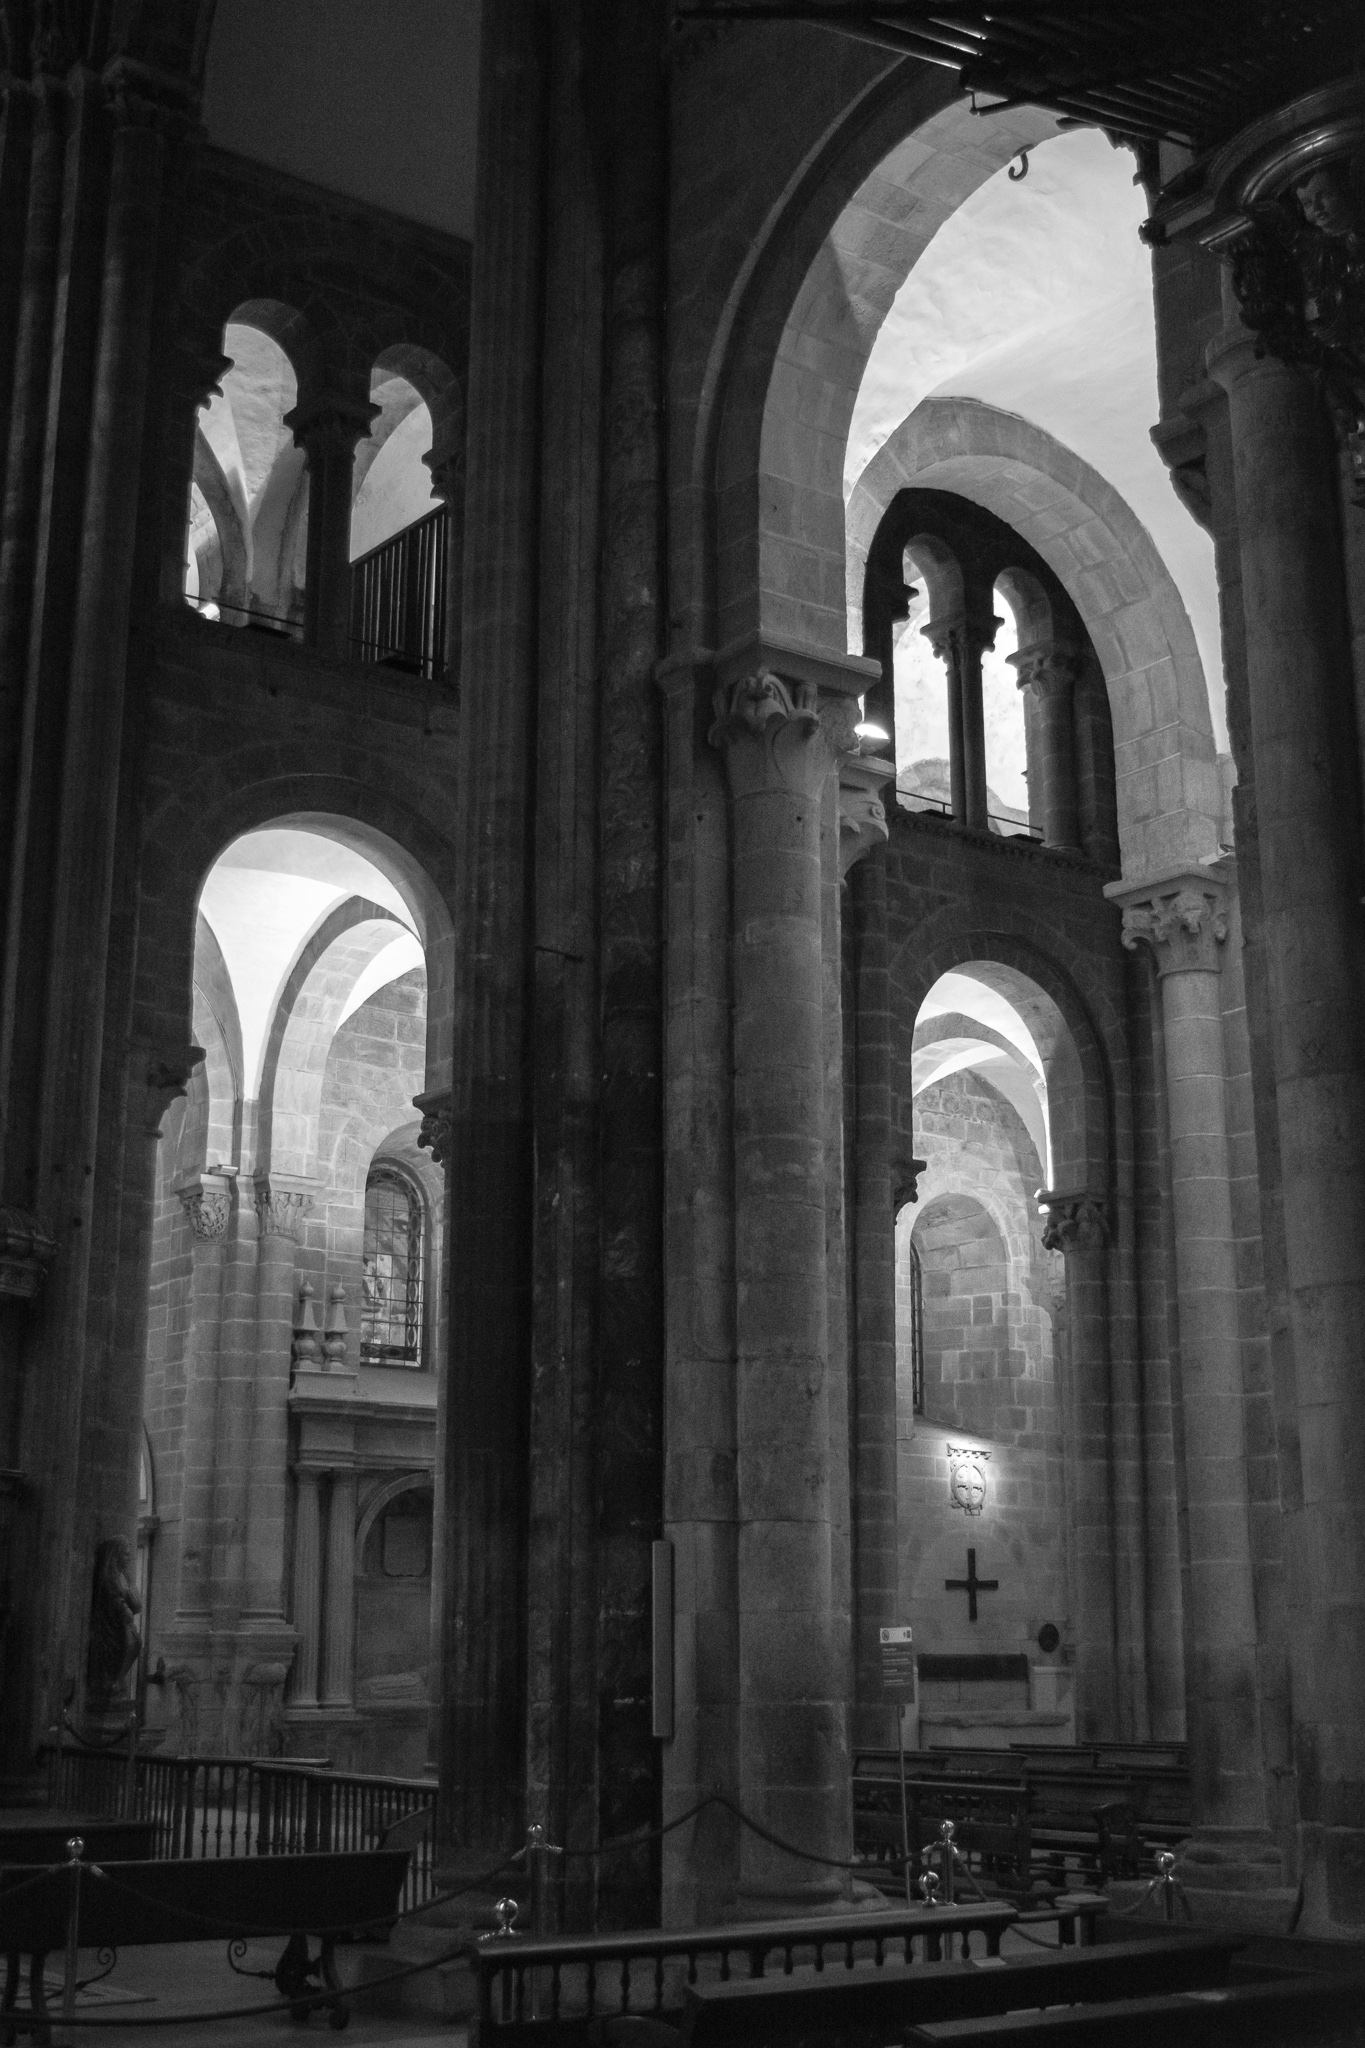 La Catedral de Santiago de Compostela, comenzada a construir en 1075, es uno de los templos más conocidos y admirados del mundo, no sólo por su patrimonio arquitectónico y artístico que conjuga los estilos románico y barroco, sino por ser referencia para los miles de peregrinos que parten hacia ella cada año. <br><br>La construcción del templo, declarado Patrimonio de la Humanidad en 1985 y de unos 100m de largo y más de 70m de altura, se completó aproximadamente hacia el año 1200.